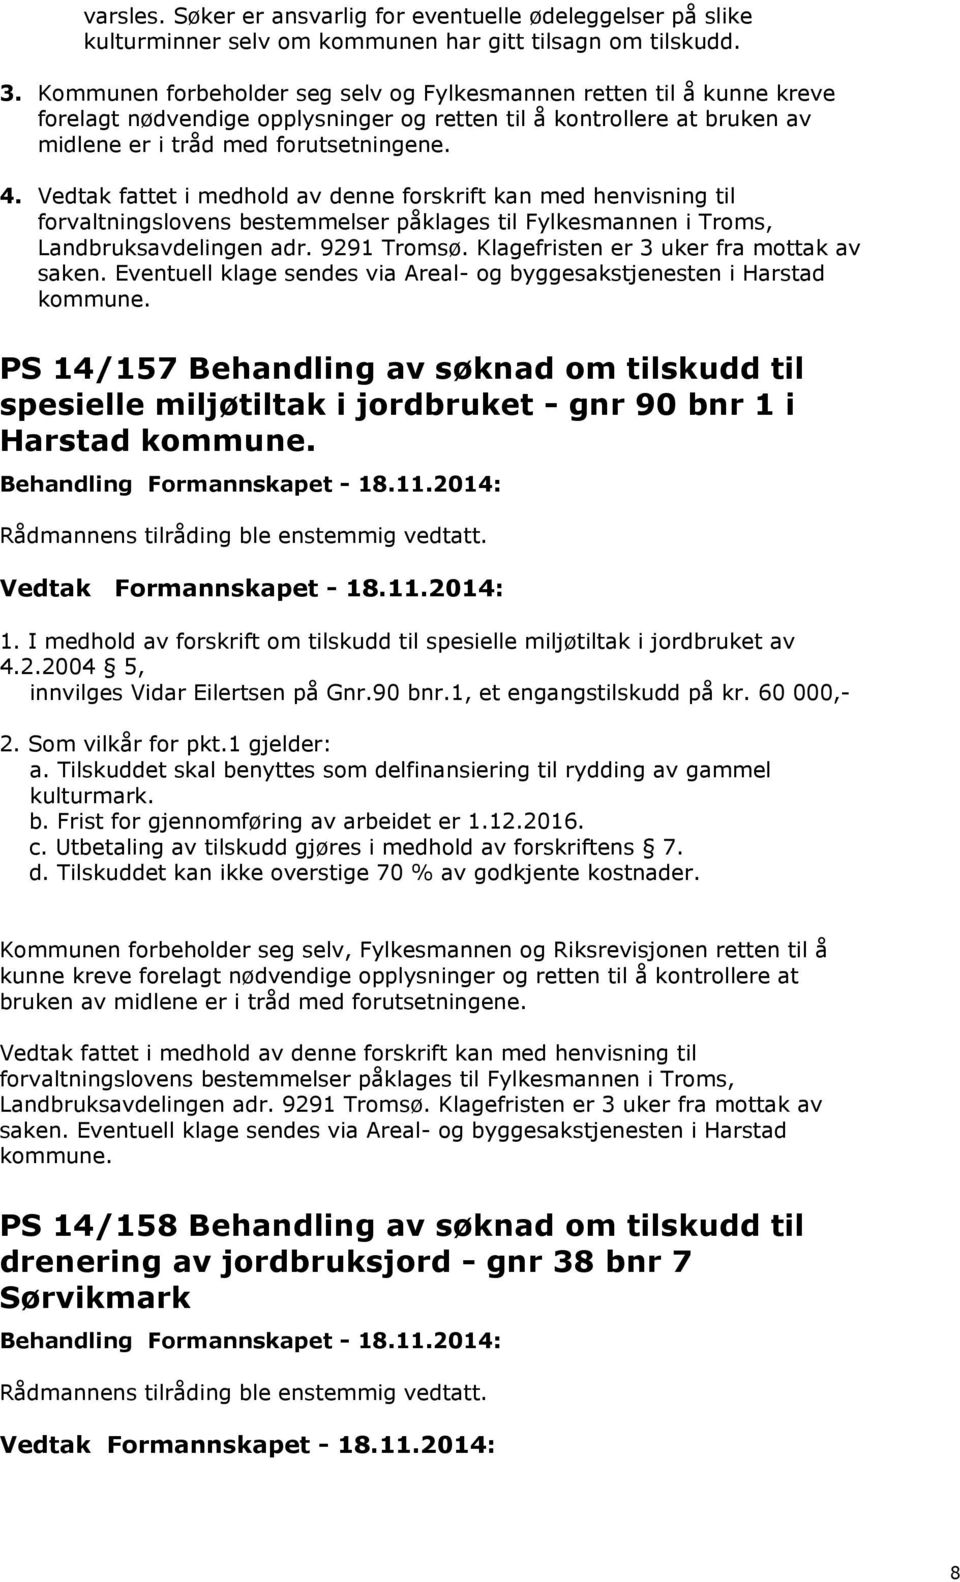 Vedtak fattet i medhold av denne forskrift kan med henvisning til forvaltningslovens bestemmelser påklages til Fylkesmannen i Troms, Landbruksavdelingen adr. 9291 Tromsø.